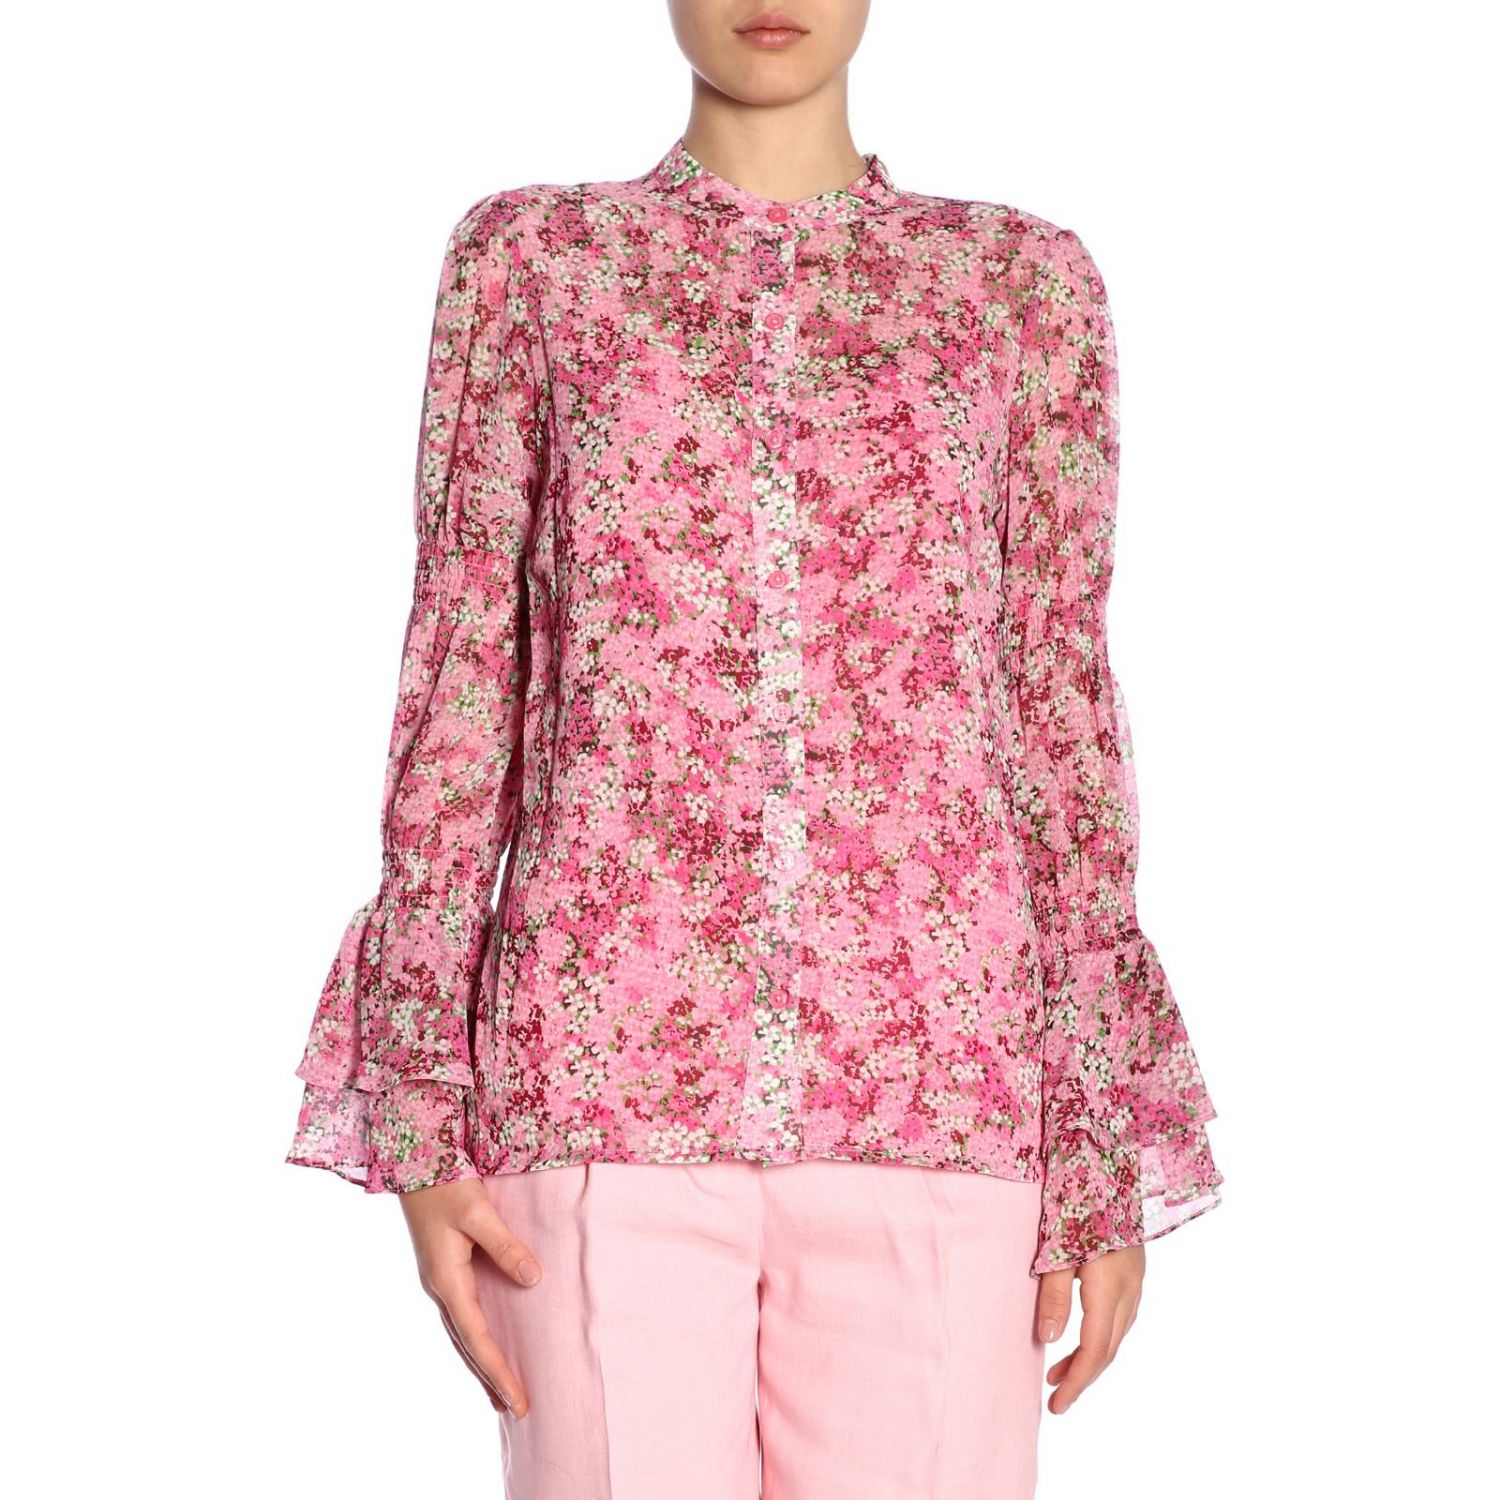 Michael Kors Outlet: Shirt women Michael - Pink | Shirt Michael Kors ...